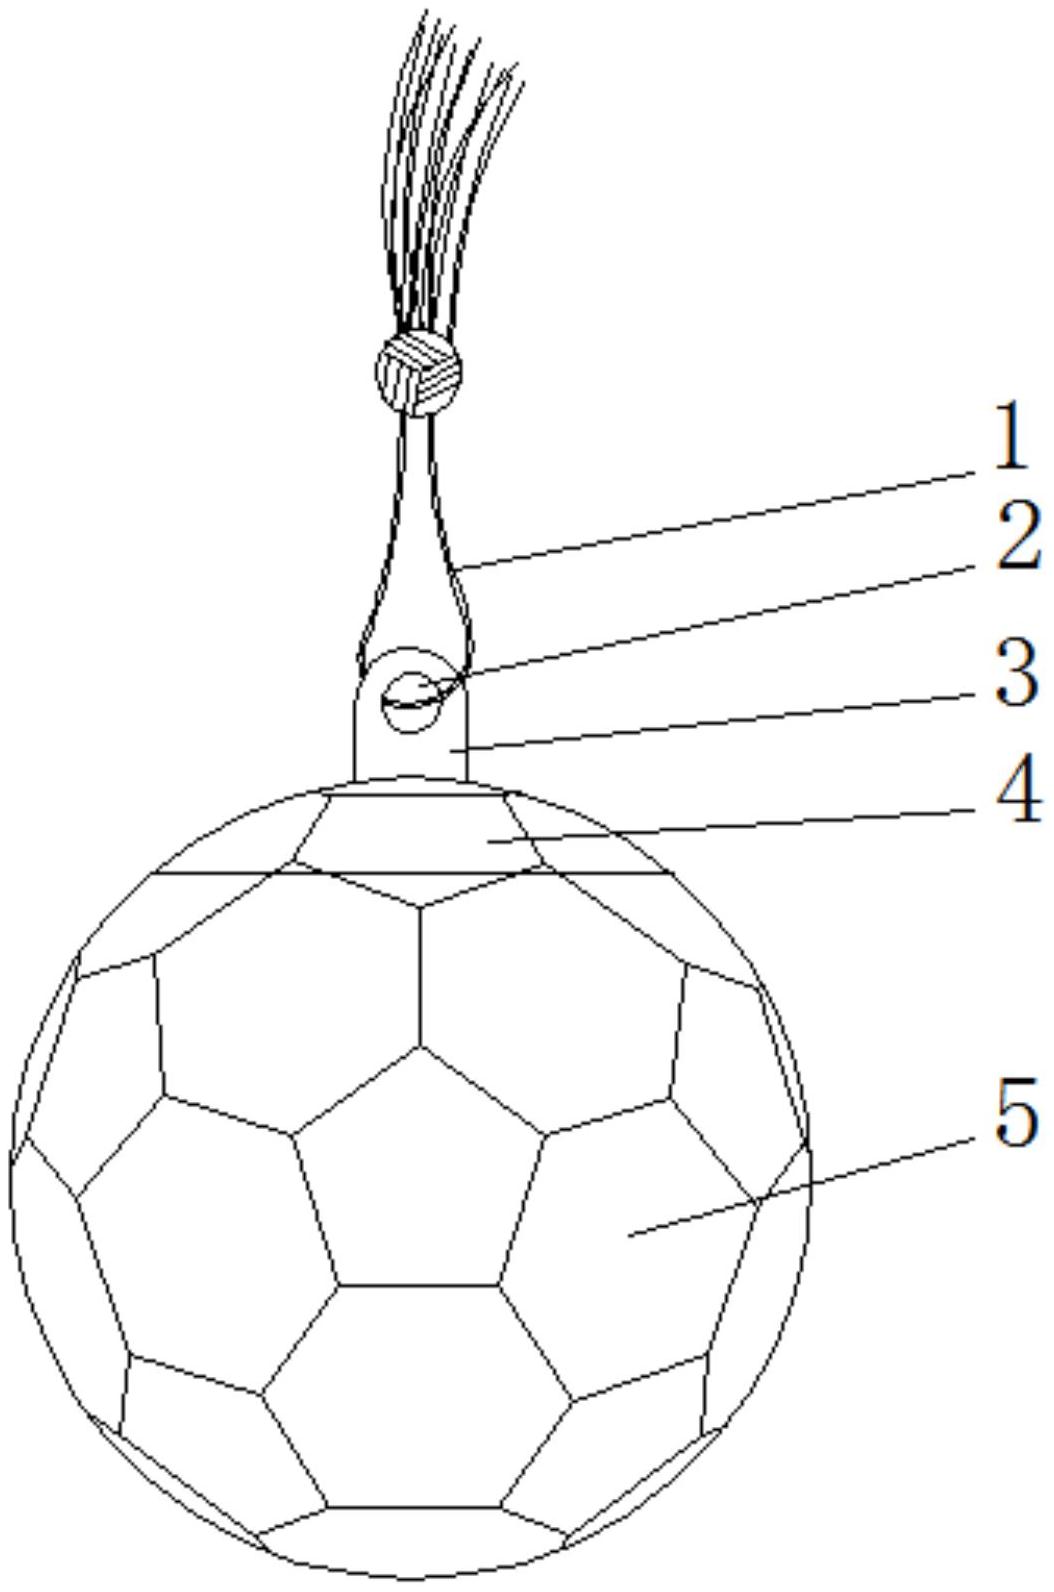 包括球壳,所述球壳上端设有球盖,所述球盖上端滑动设置有连接座,且所